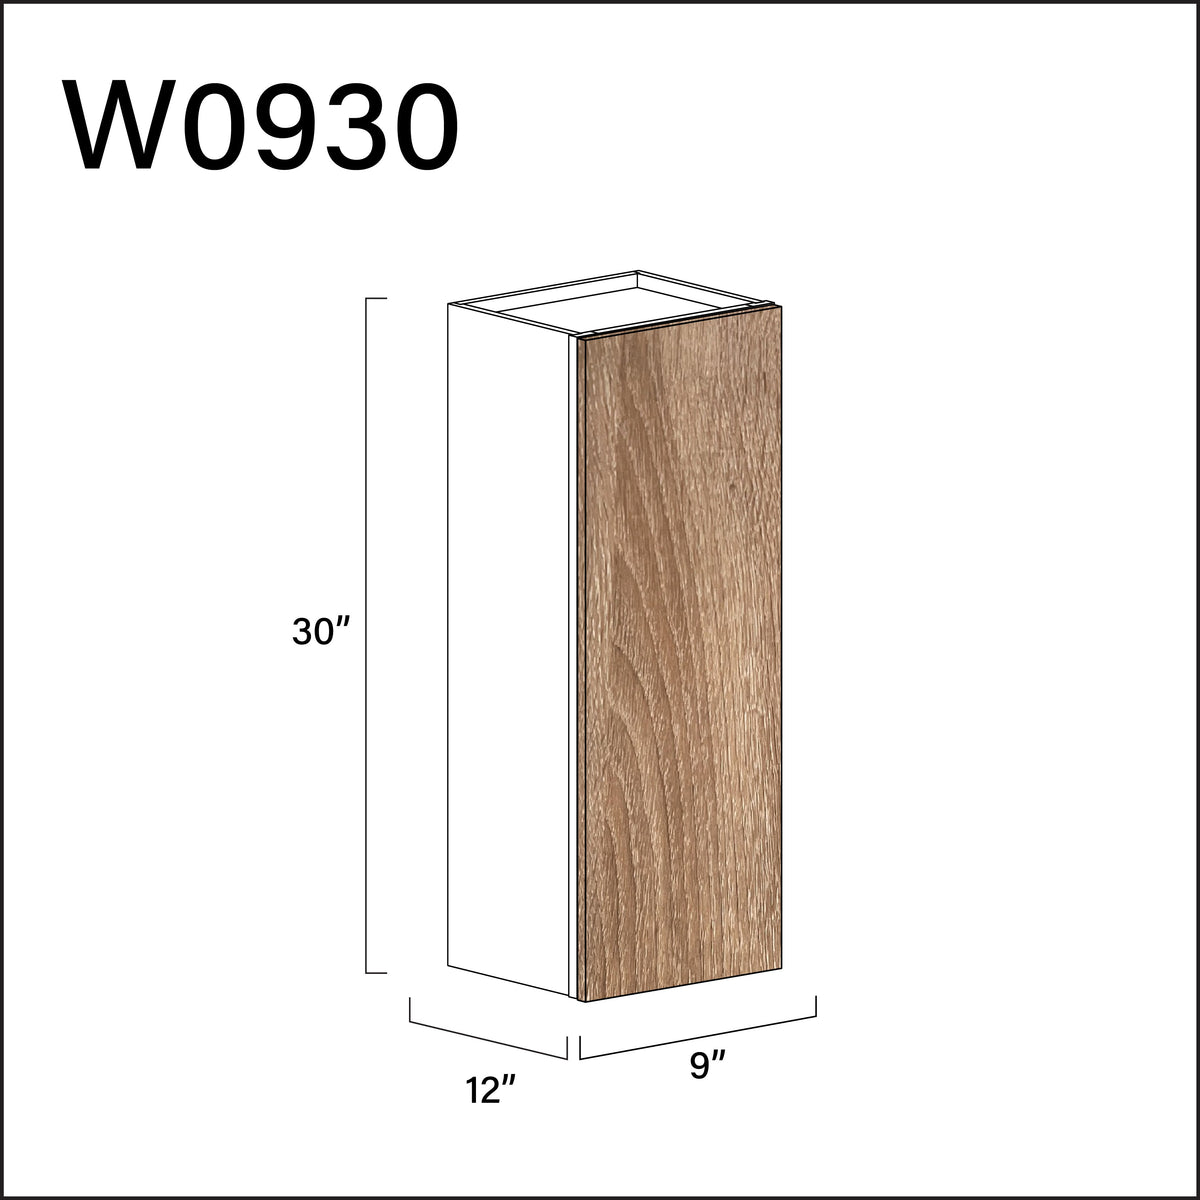 Textured Oak Frameless Single Door Wall Cabinet - 9" W x 30" H x 12" D